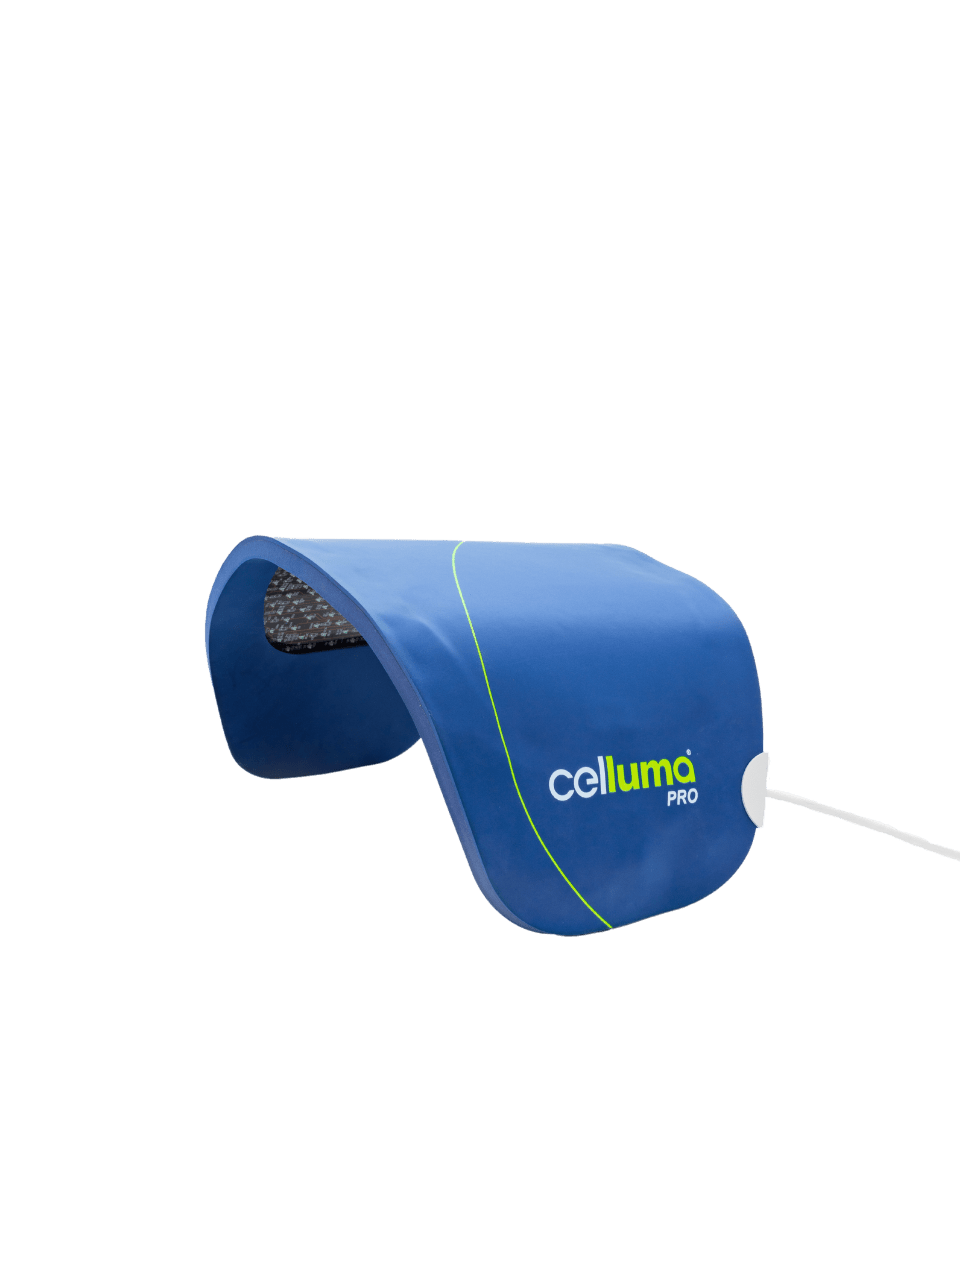 Celluma Pro At-Home Light Therapy Device TOOLS & ACCESSORIES Celluma 24” x 10” 